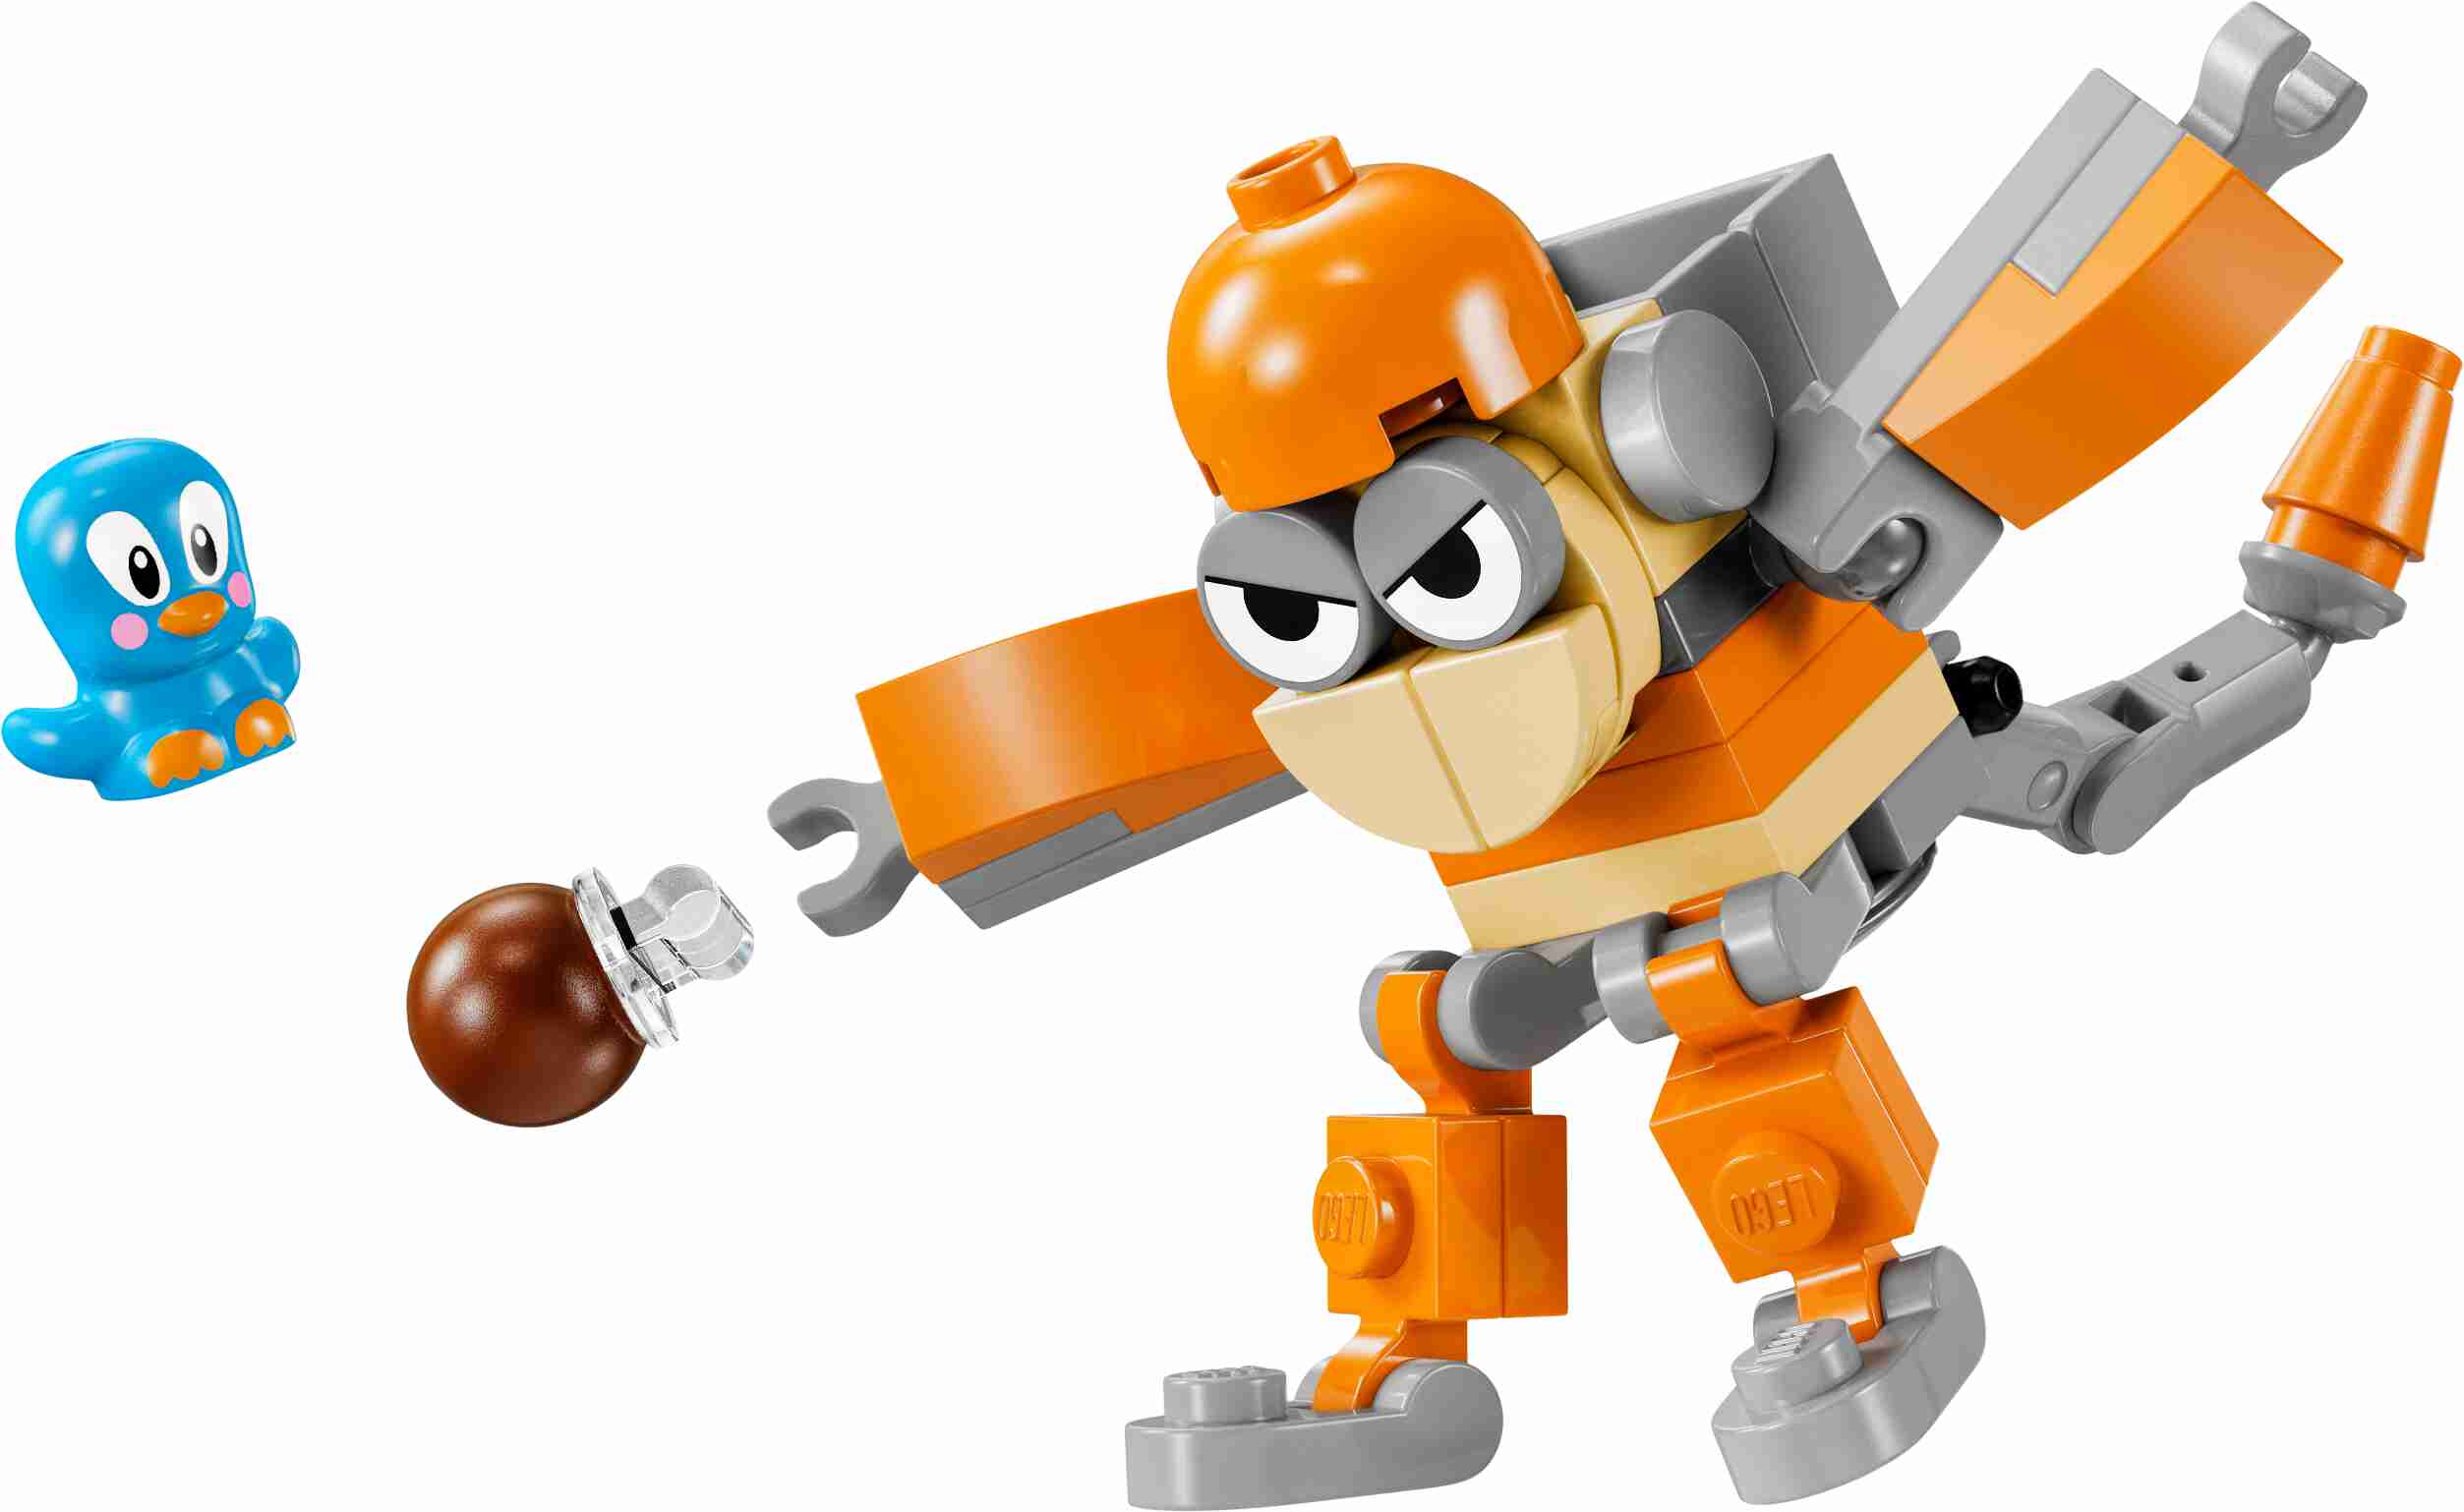 LEGO 30676 Sonic the Hedgehog Kikis Kokosnussattacke